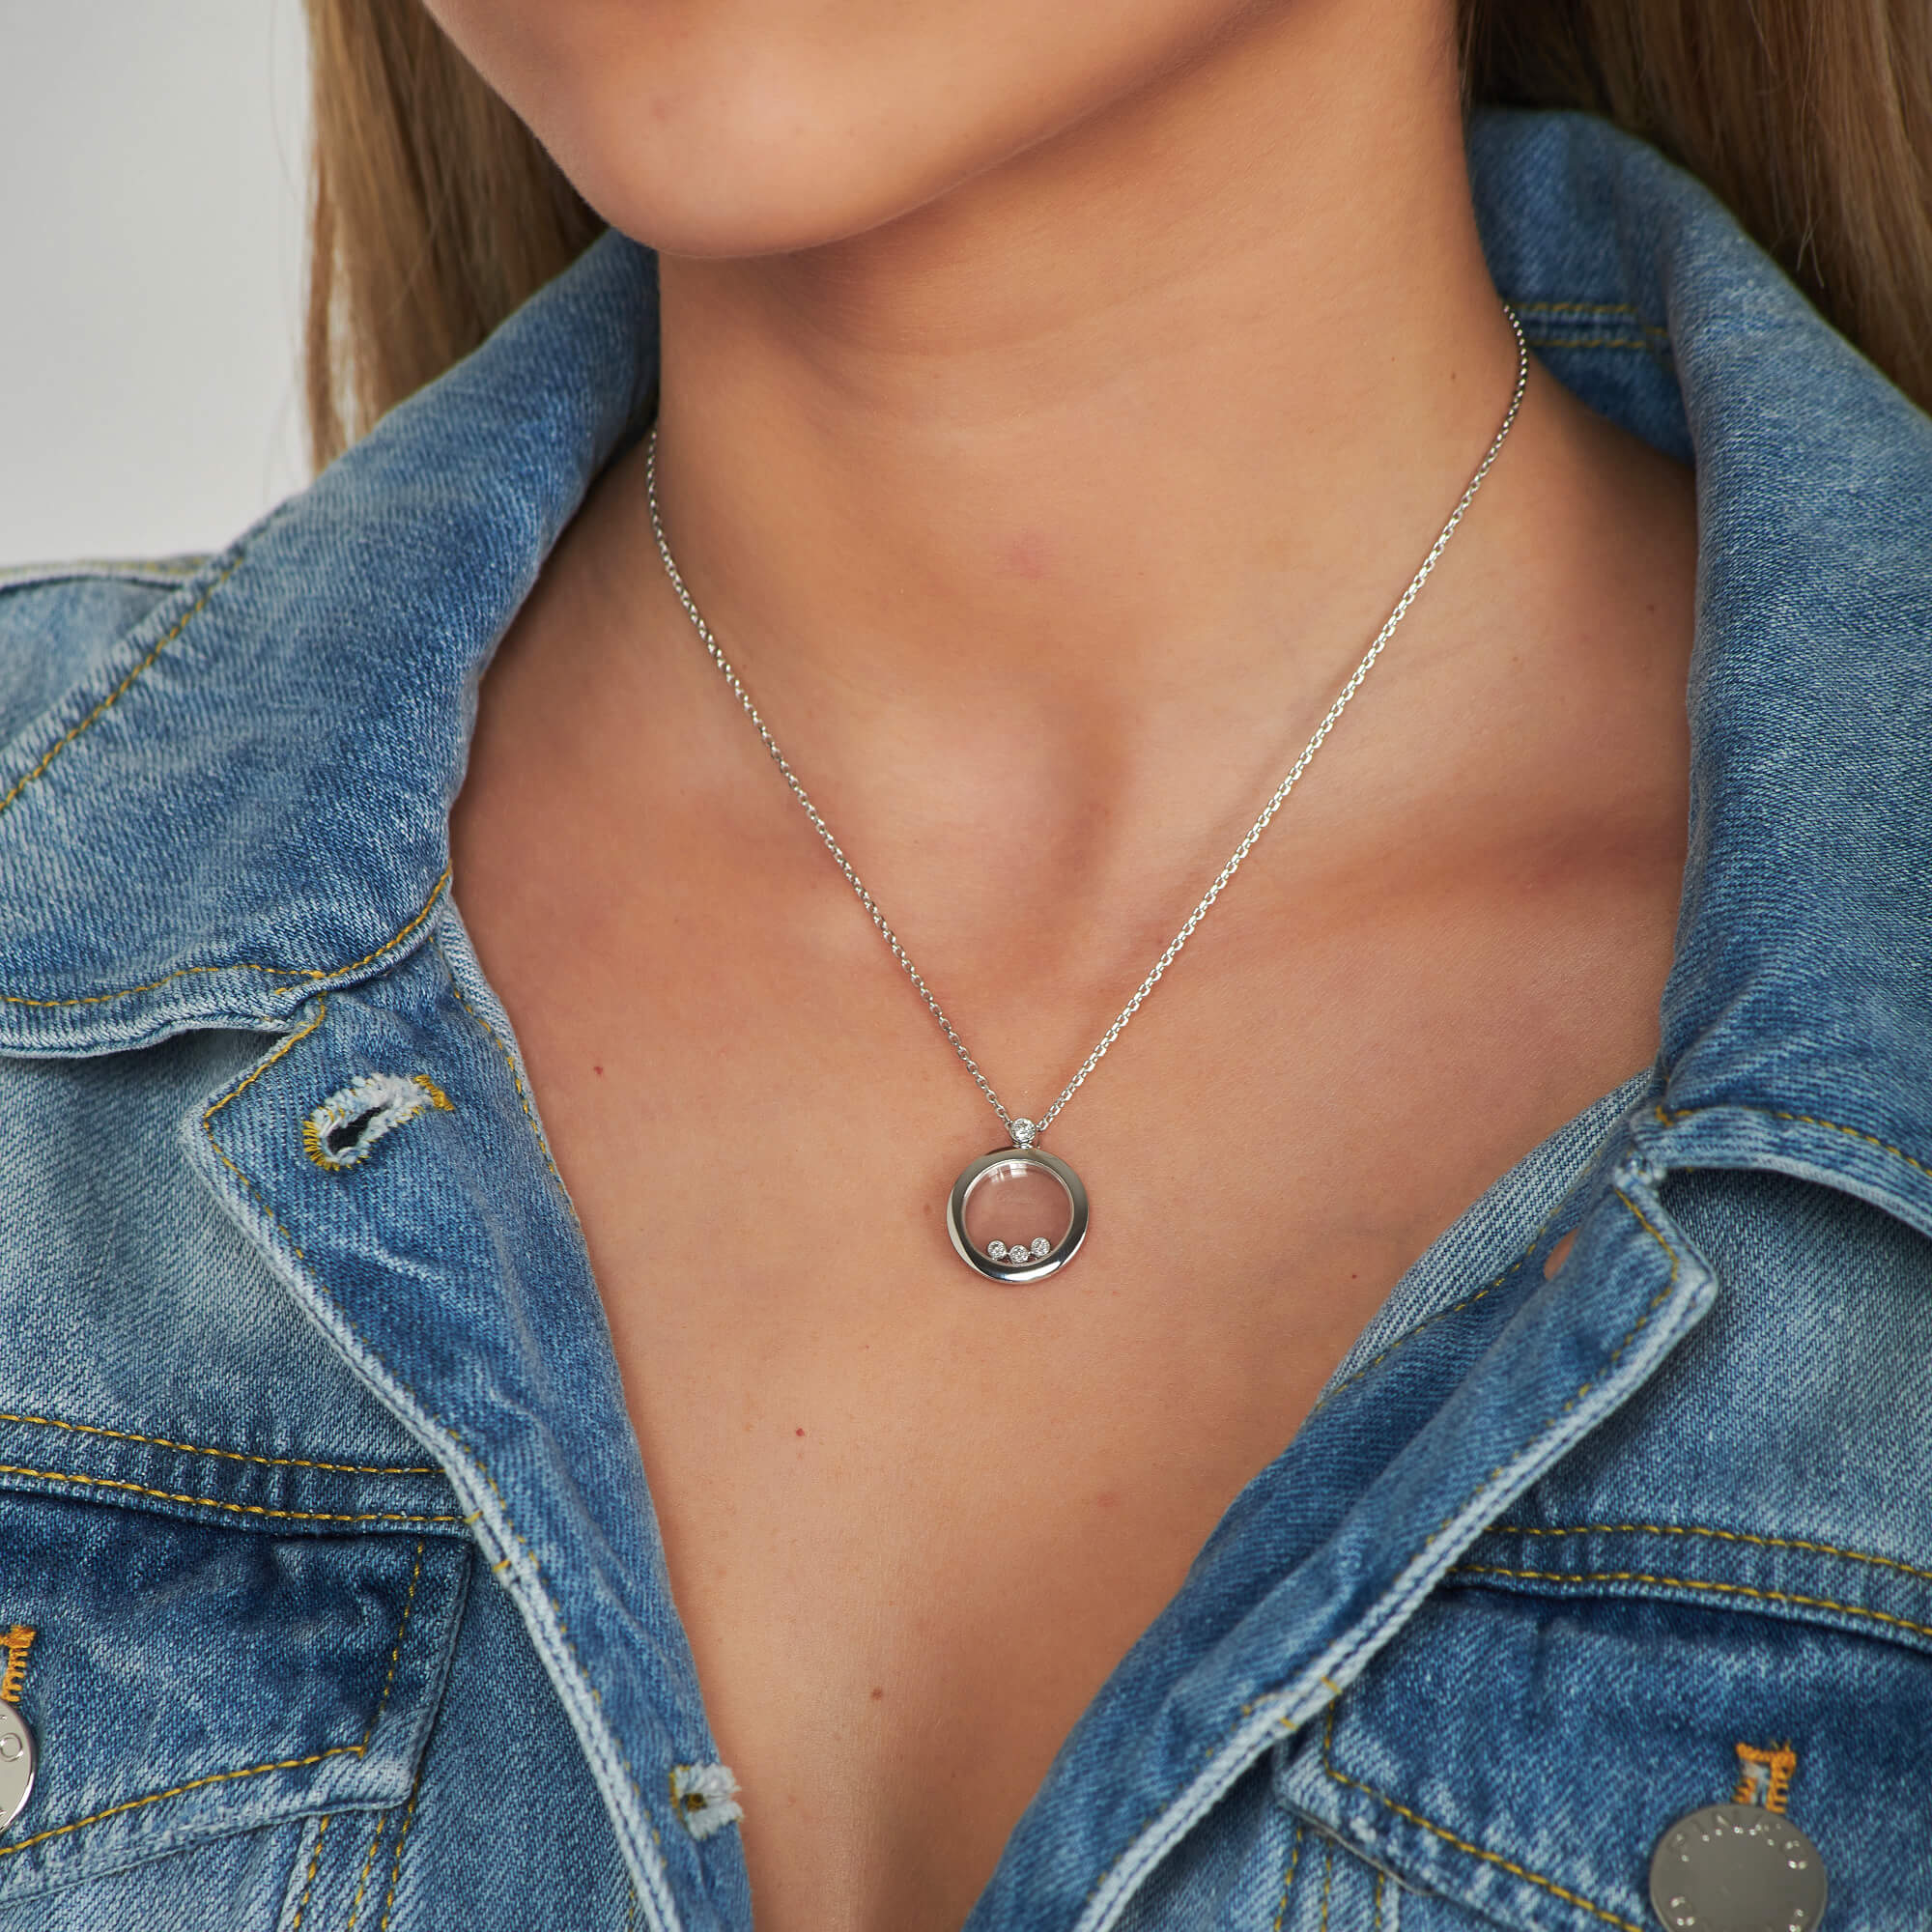 Women's Necklaces and Pendants: Happy Diamonds Icons Round Pendant 793929-1201